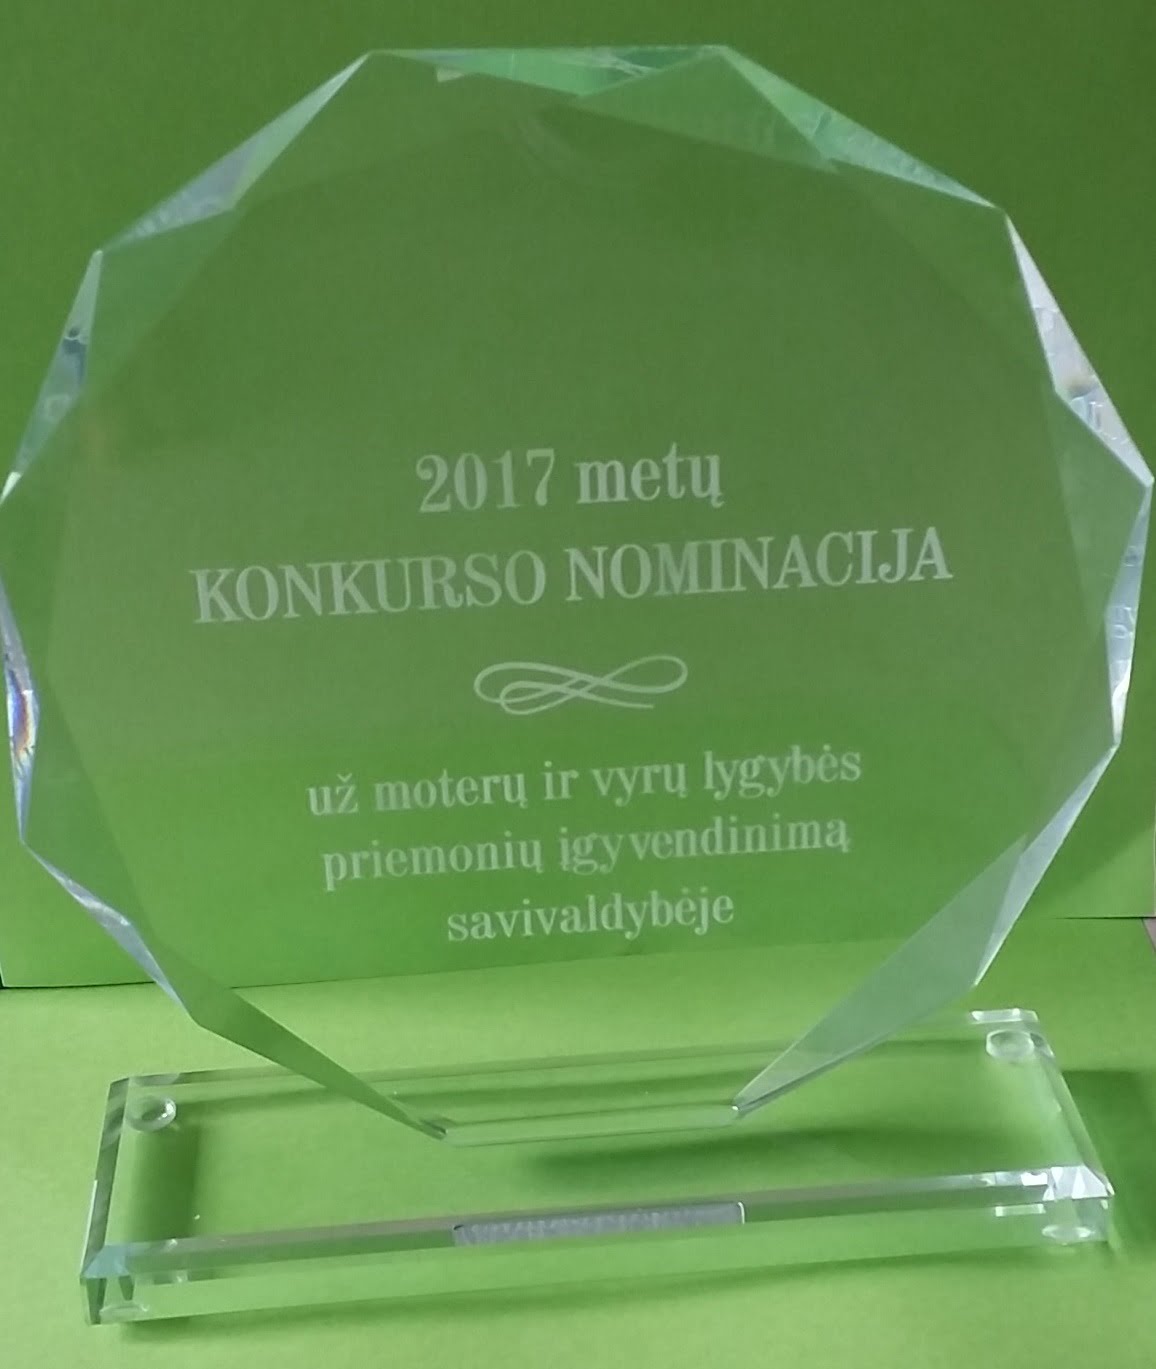 Lietuvos moterų lobistinė organizacija trečią kartą surengė tradicinį savivaldybių konkursą “Už darbą stiprinant moterų ir vyrų lygybę”